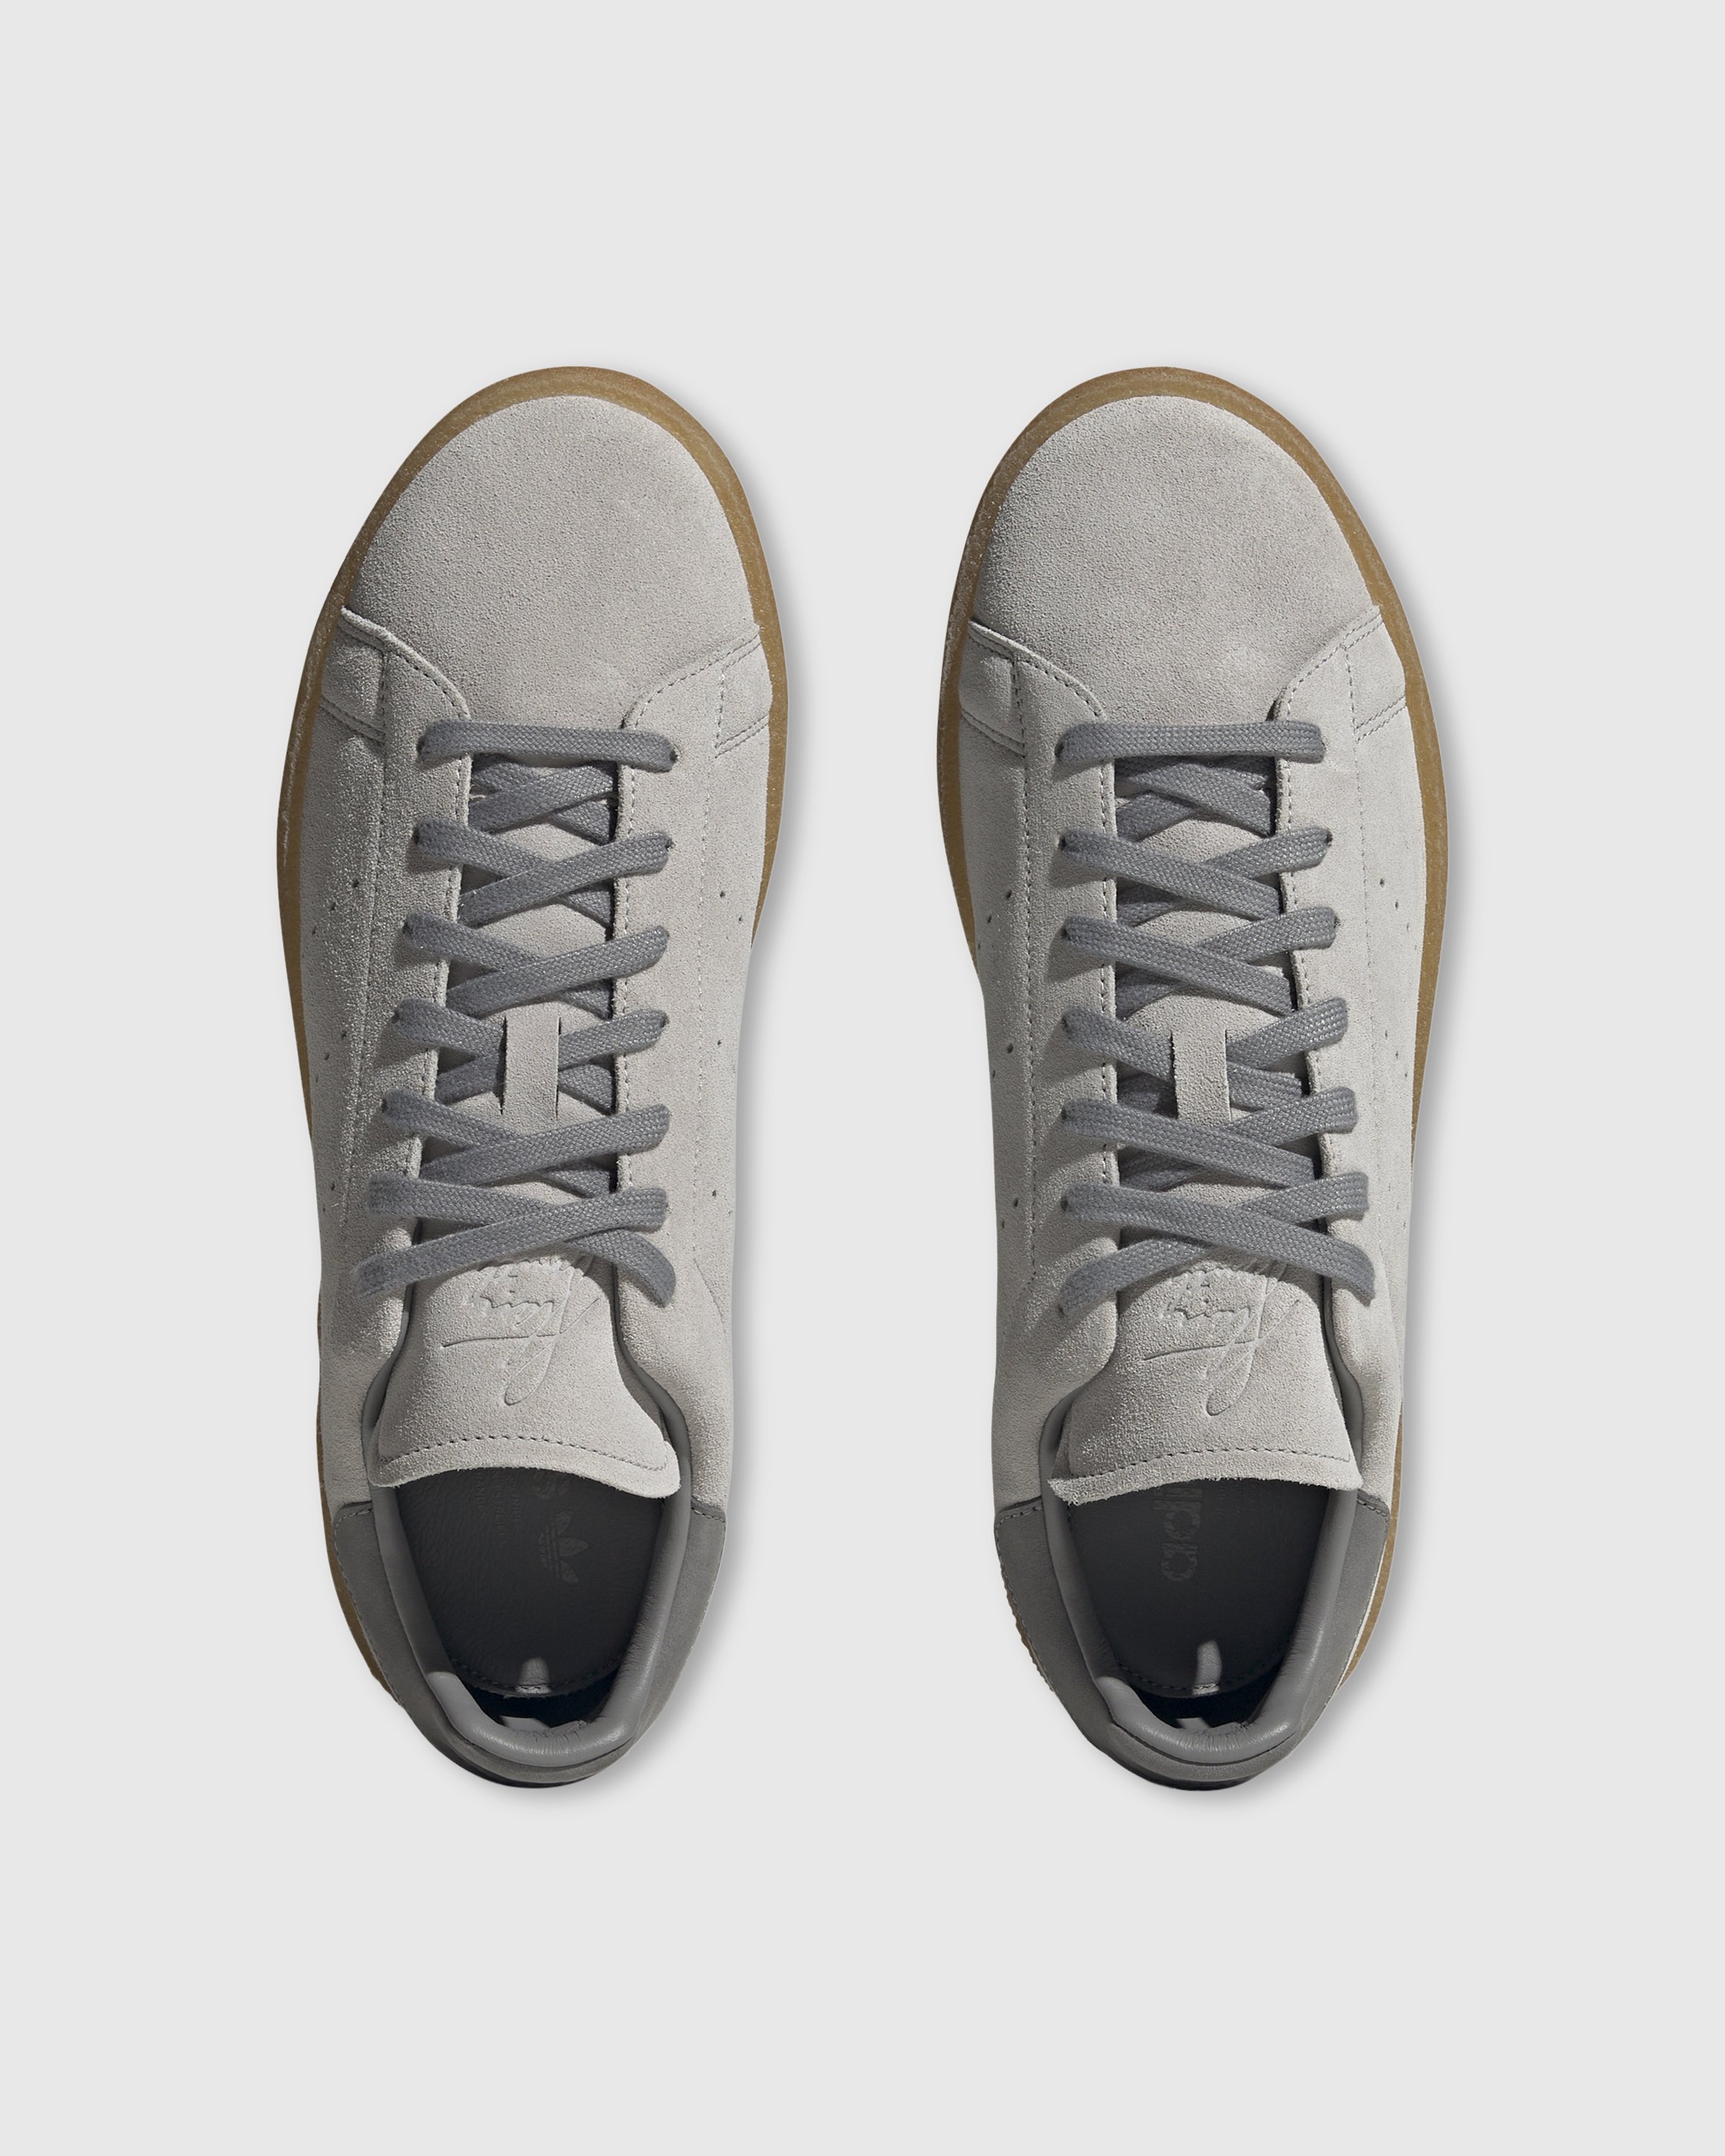 Adidas - Stan Smith Crepe Grey - Footwear - Grey - Image 4